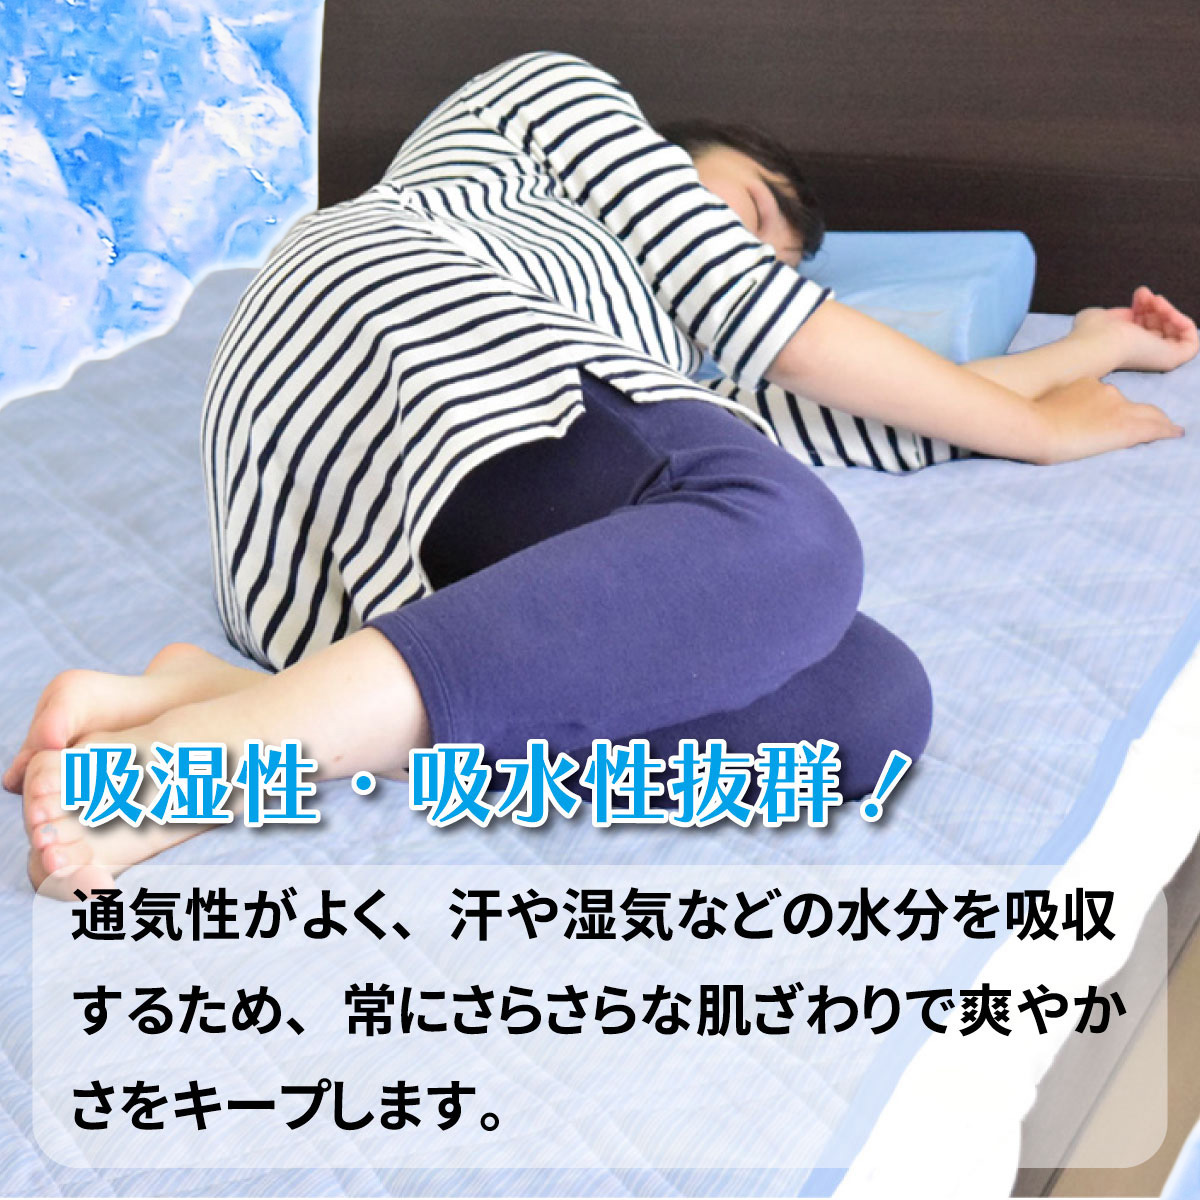 接触冷感敷パッドに寝そべるイメージ写真と吸湿性・吸水性に優れていることを載せたバナー画像